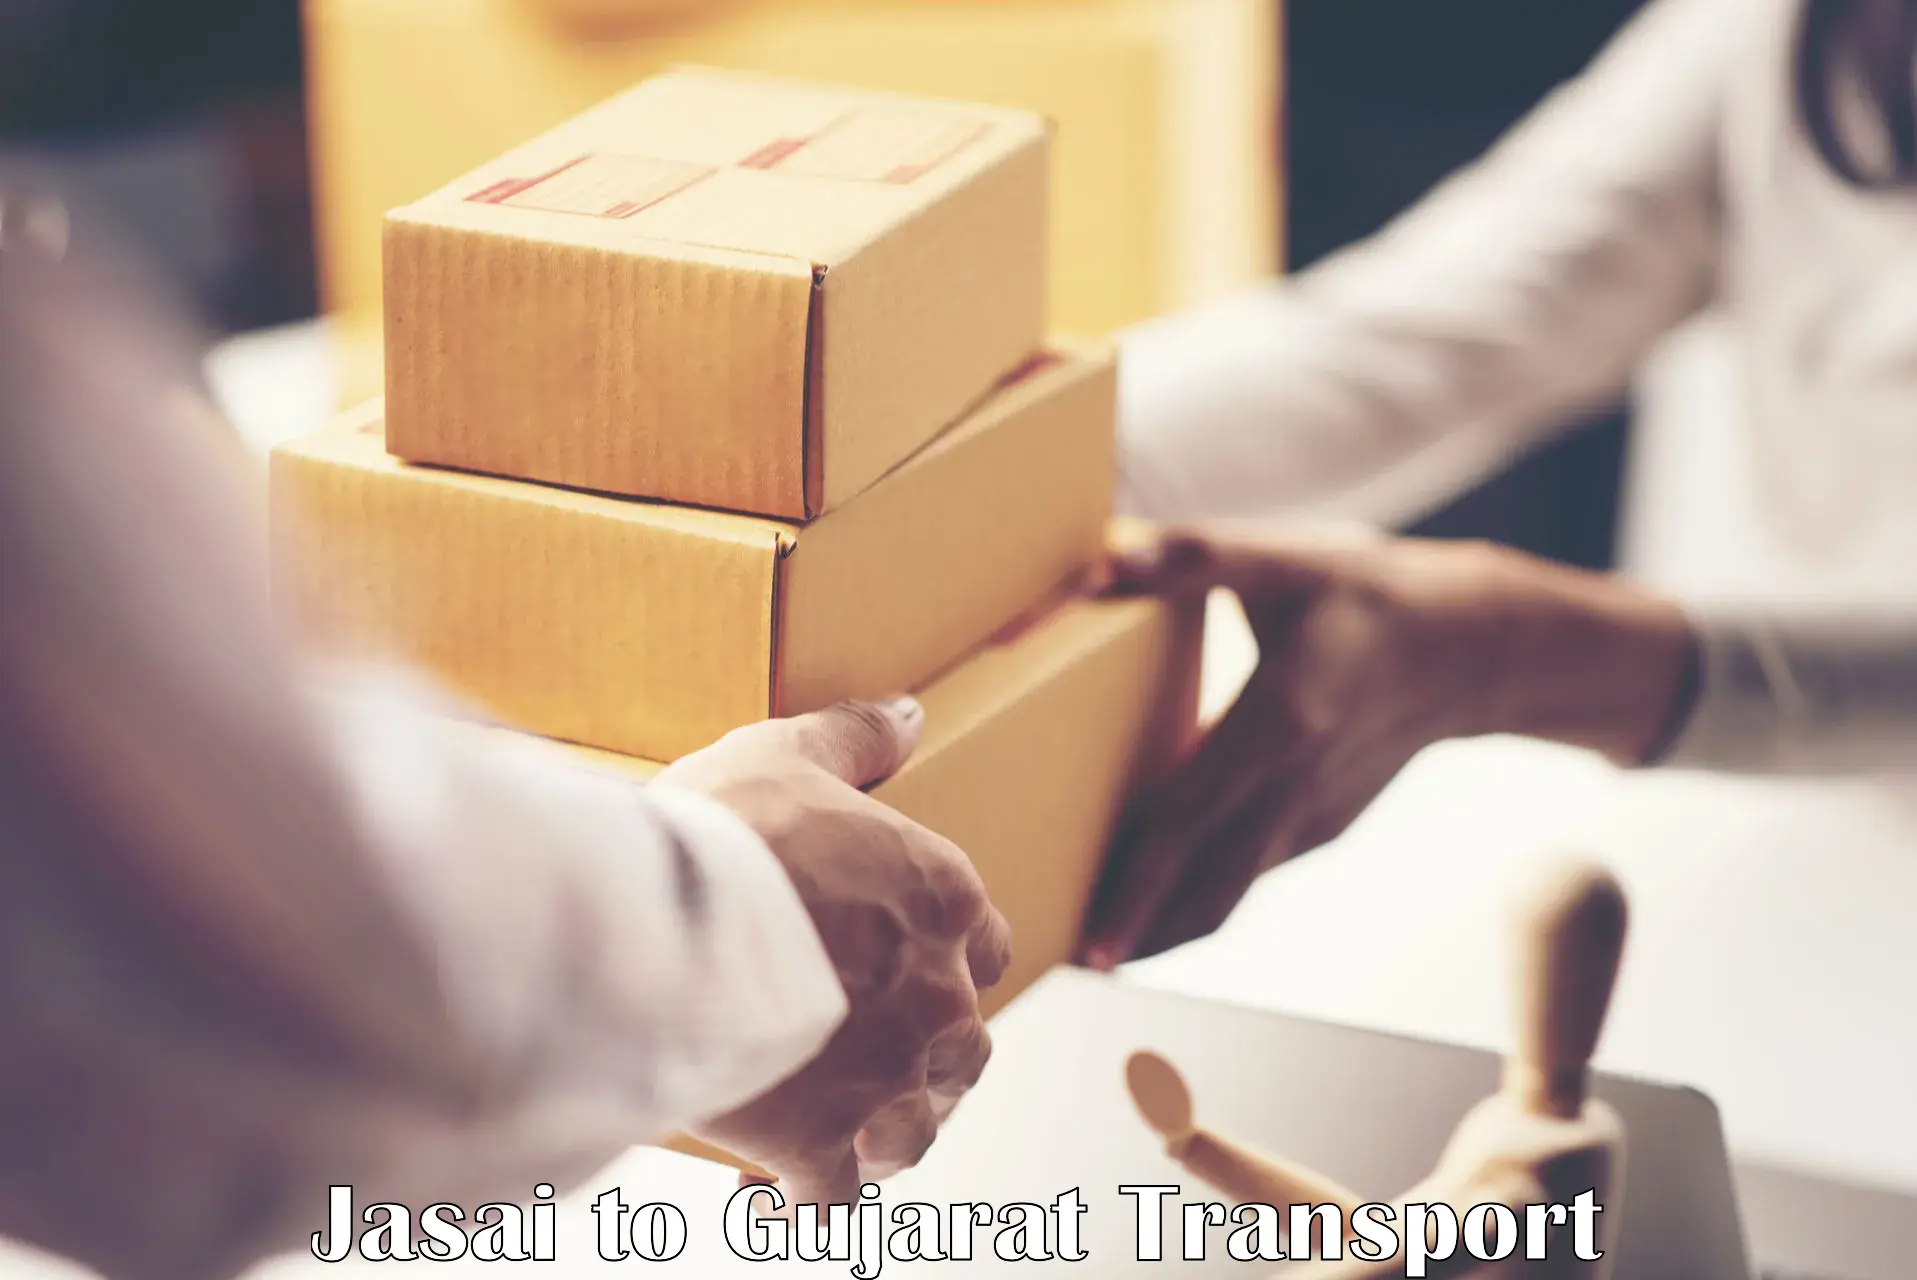 Transport in sharing Jasai to Gujarat